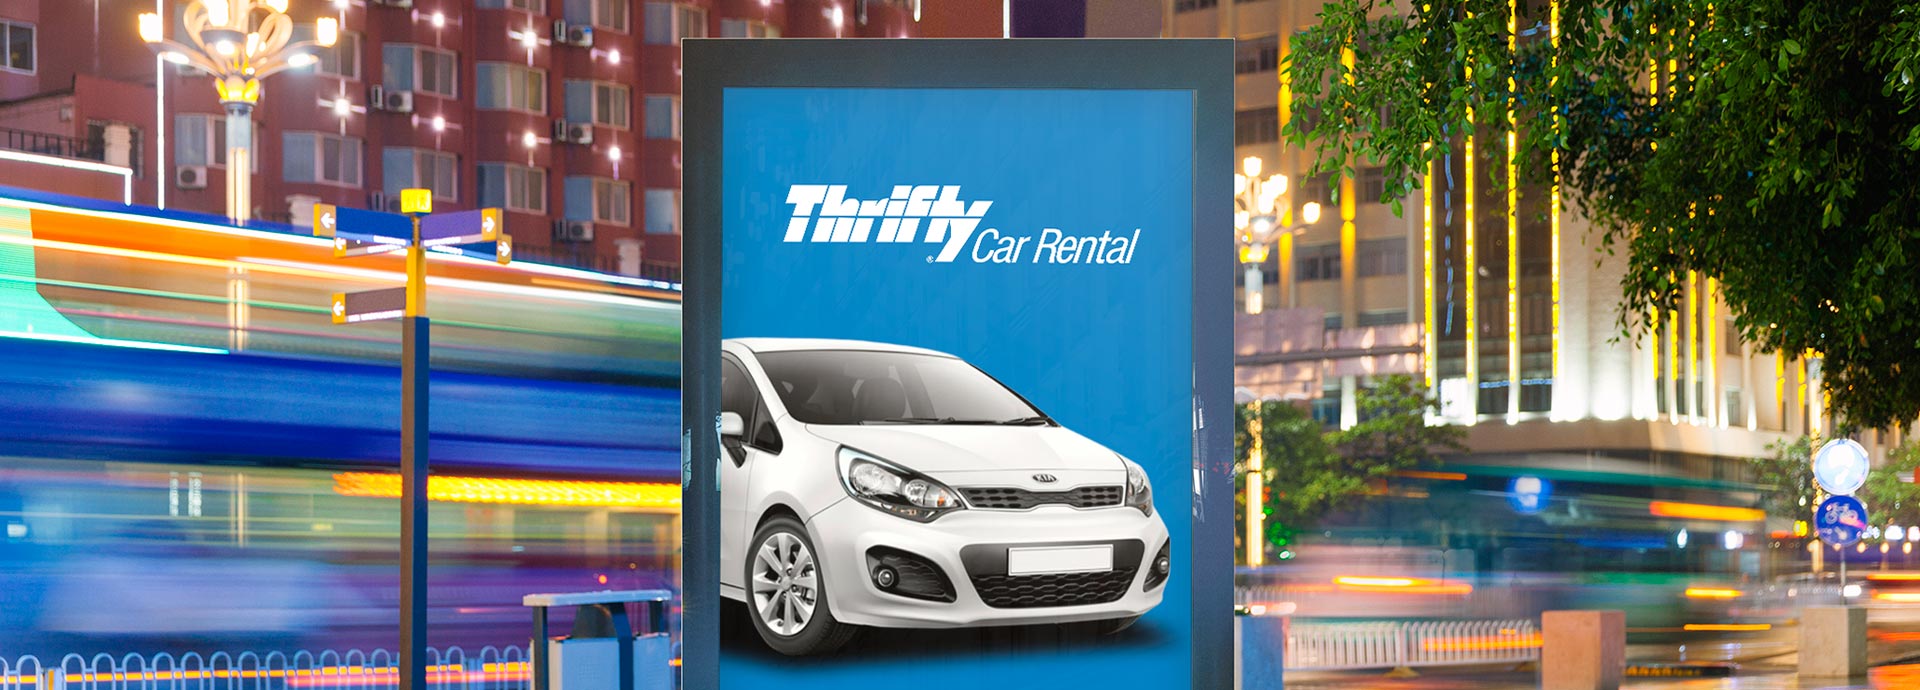 Thrifty Rent-a-Car